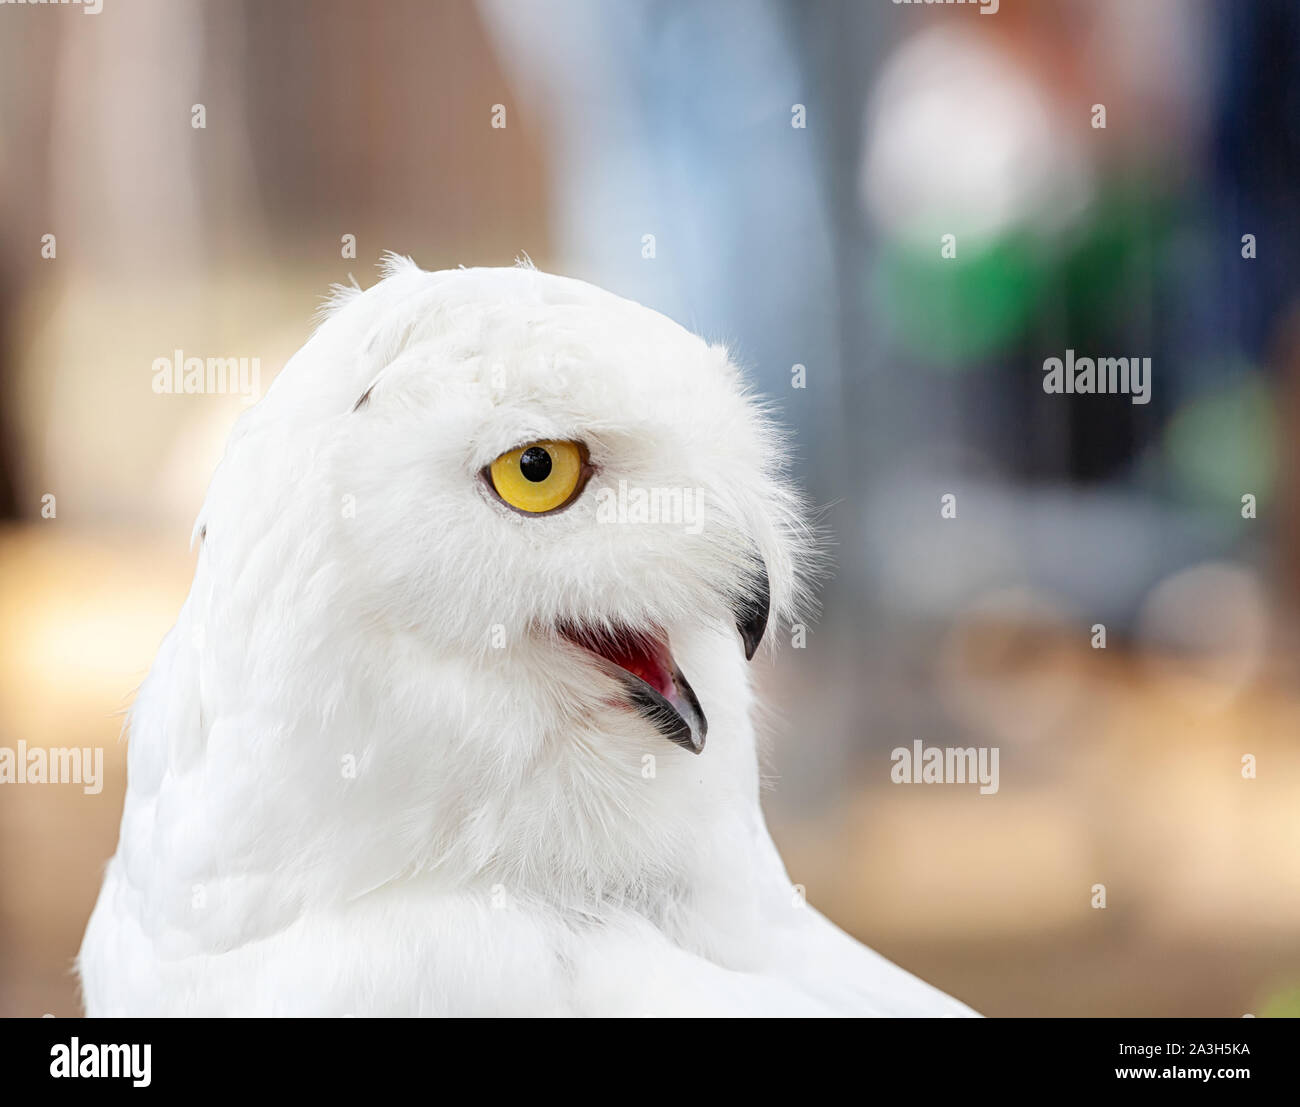 Snowy Owl-Bubo scandiacus, eine große, weiße Eule der typischen Eule Familie. Schneeeulen sind native zu den arktischen Regionen in Nordamerika und Eurasien. Stockfoto